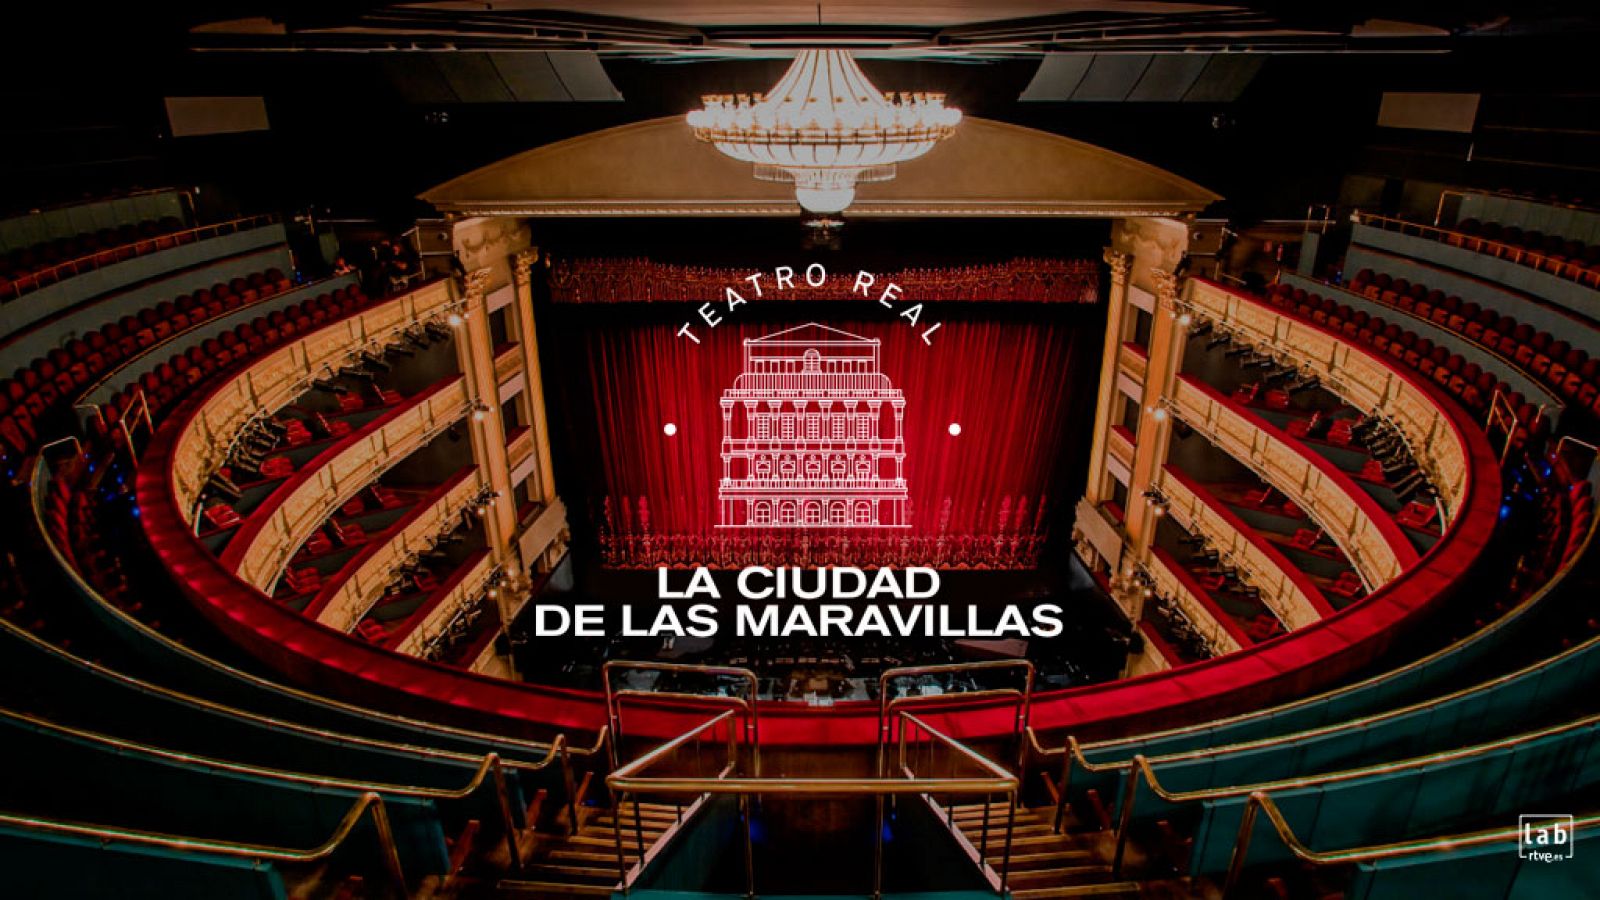 Teatro Real: La Ciudad de las Maravillas